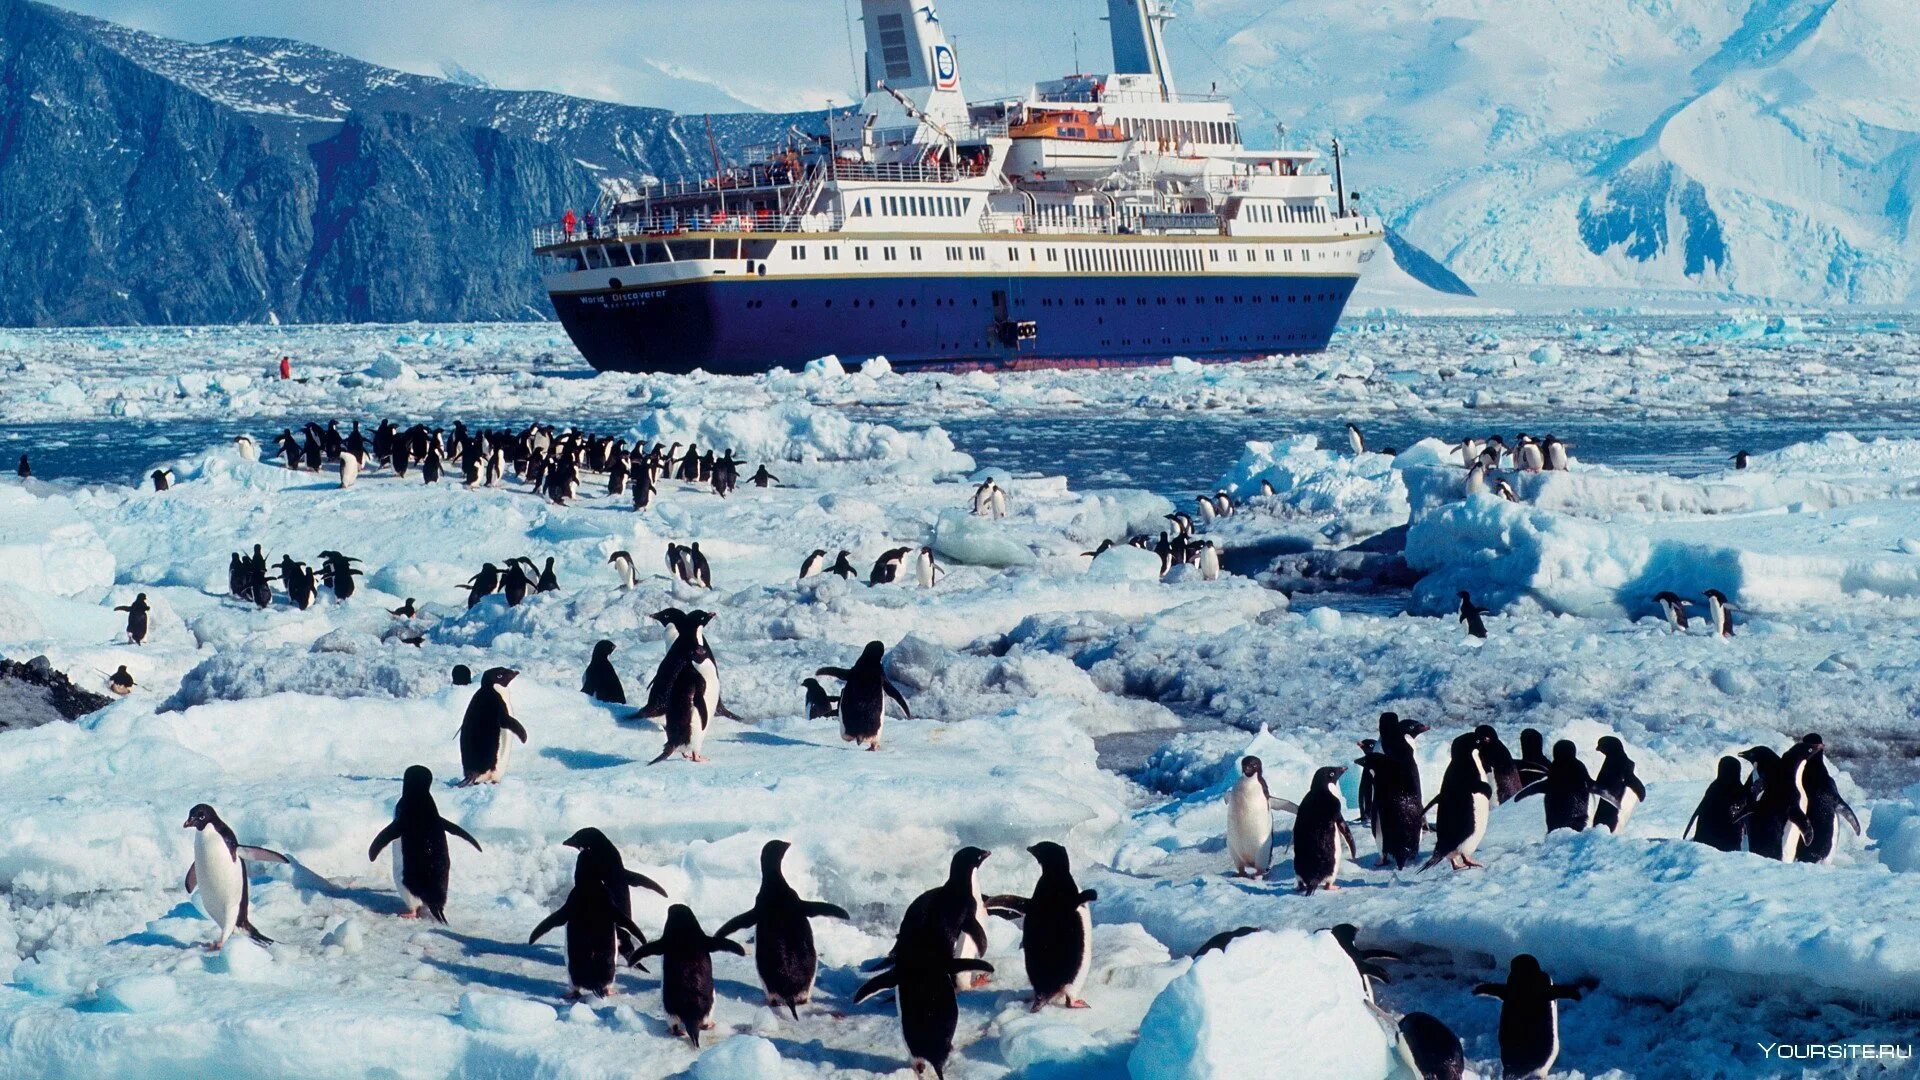 Антарктида путешествие цена. Ушуайя Антарктида круизы. Арктика Антарктика Антарктида. Калипсо Кусто в Антарктиде. Жак Кусто в Антарктиде.